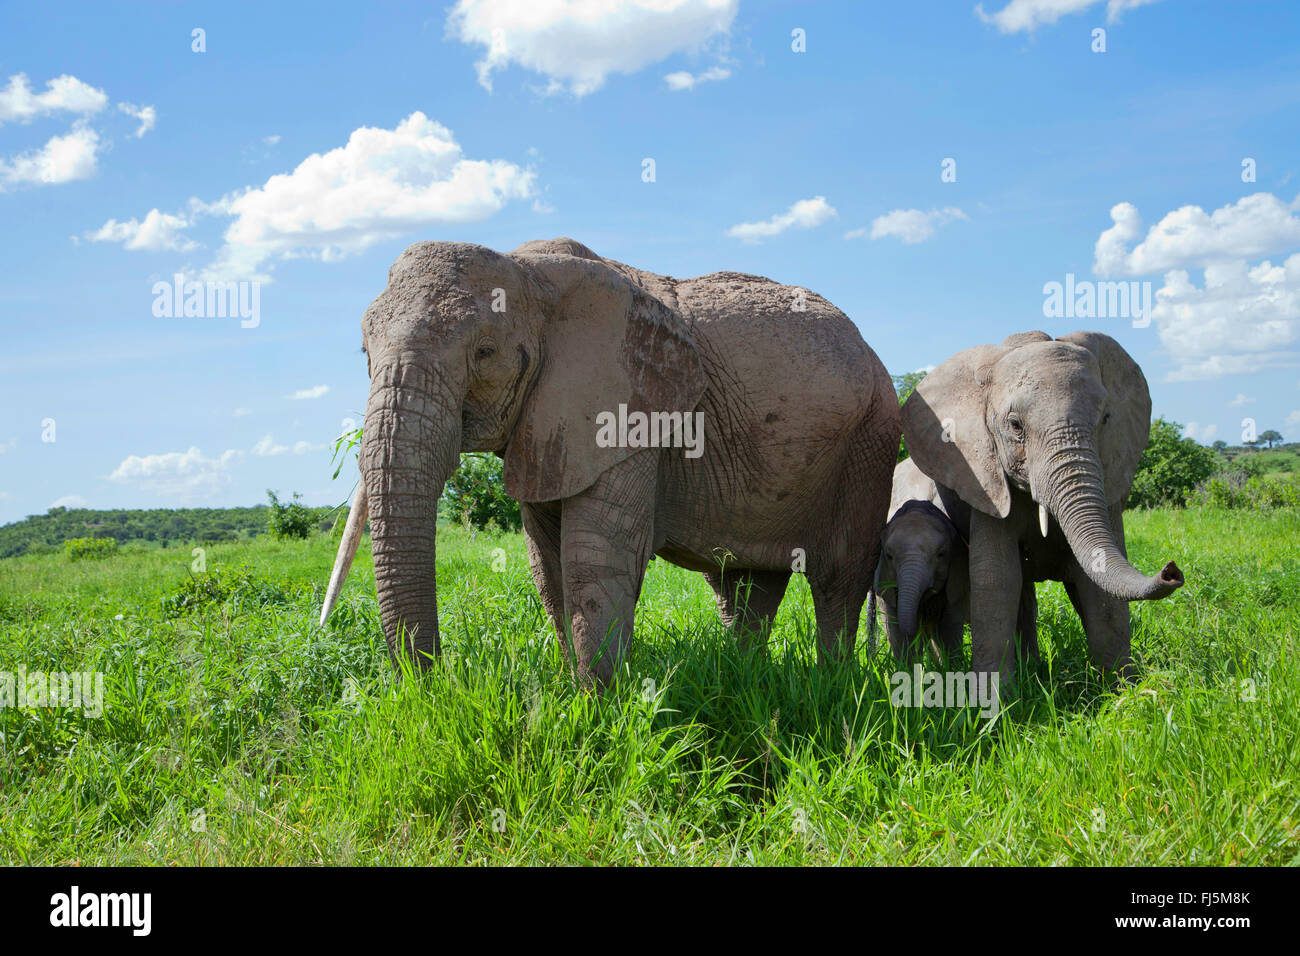 Afrikanischer Elefant (Loxodonta Africana), Kuh Elefanten mit Kälbern auf Rasen, Kenia Stockfoto